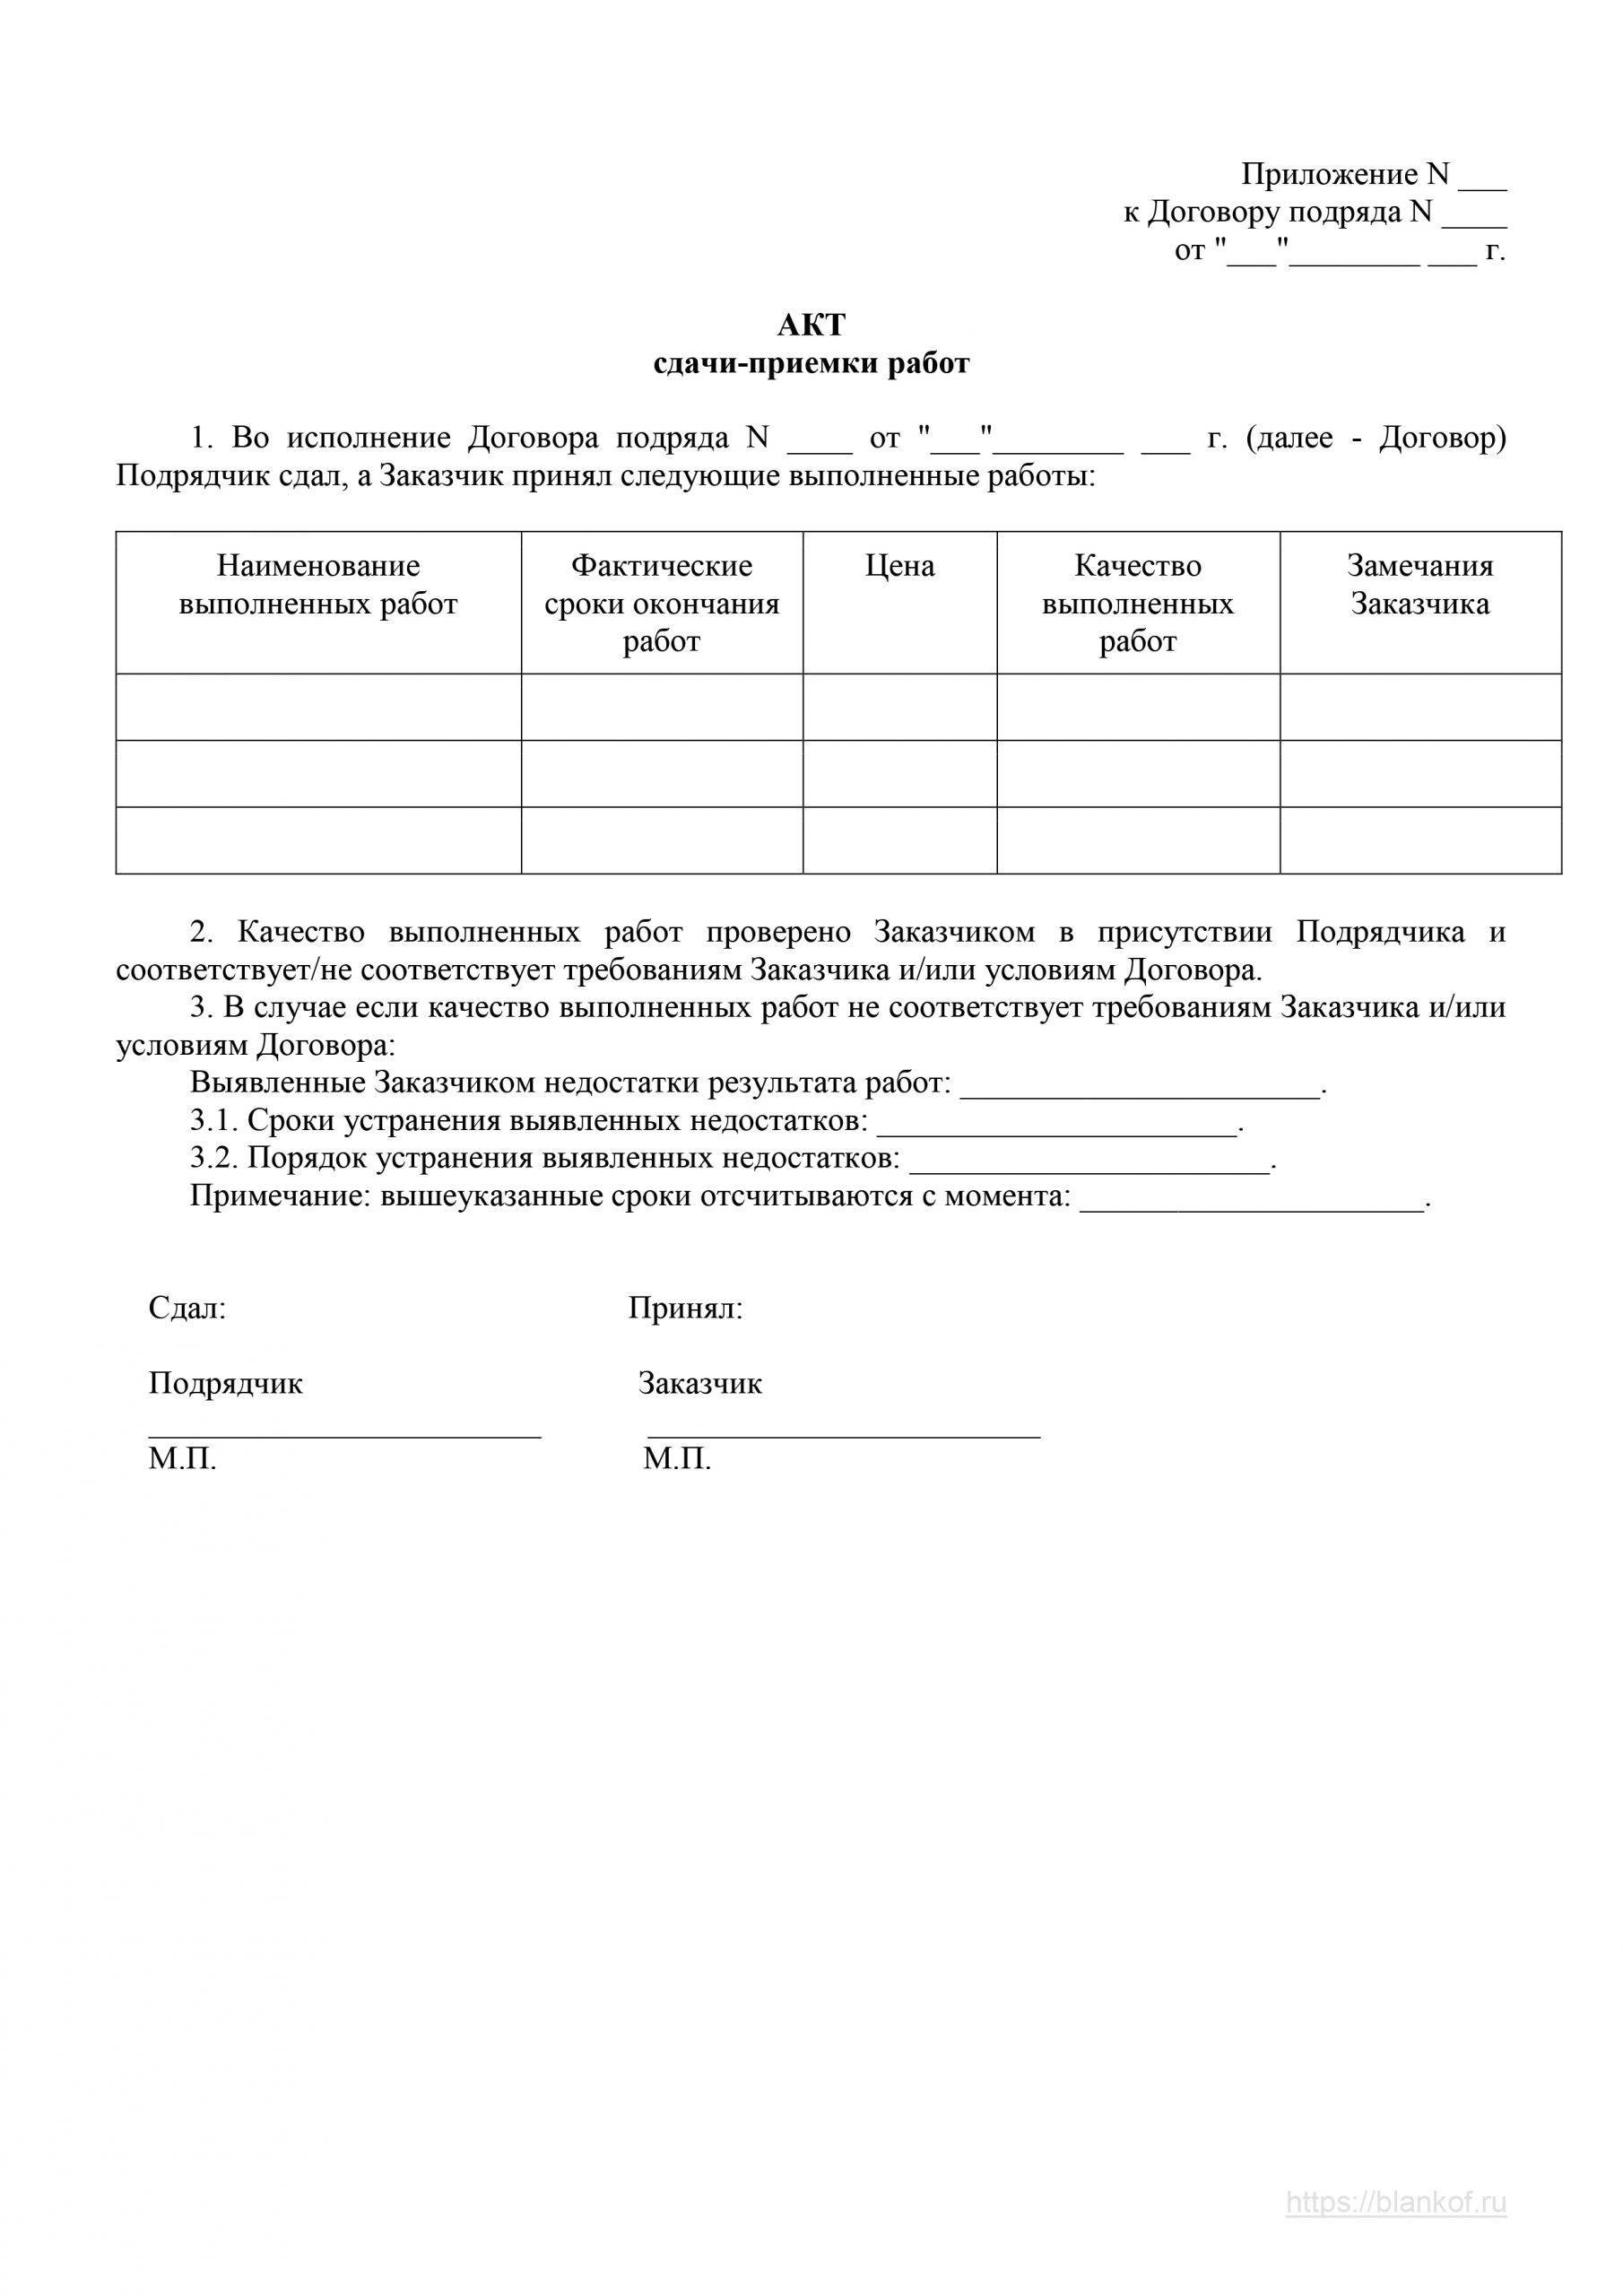 Акт сдачи-приемки выполненных работ. содержание и правила составления документа :: businessman.ru